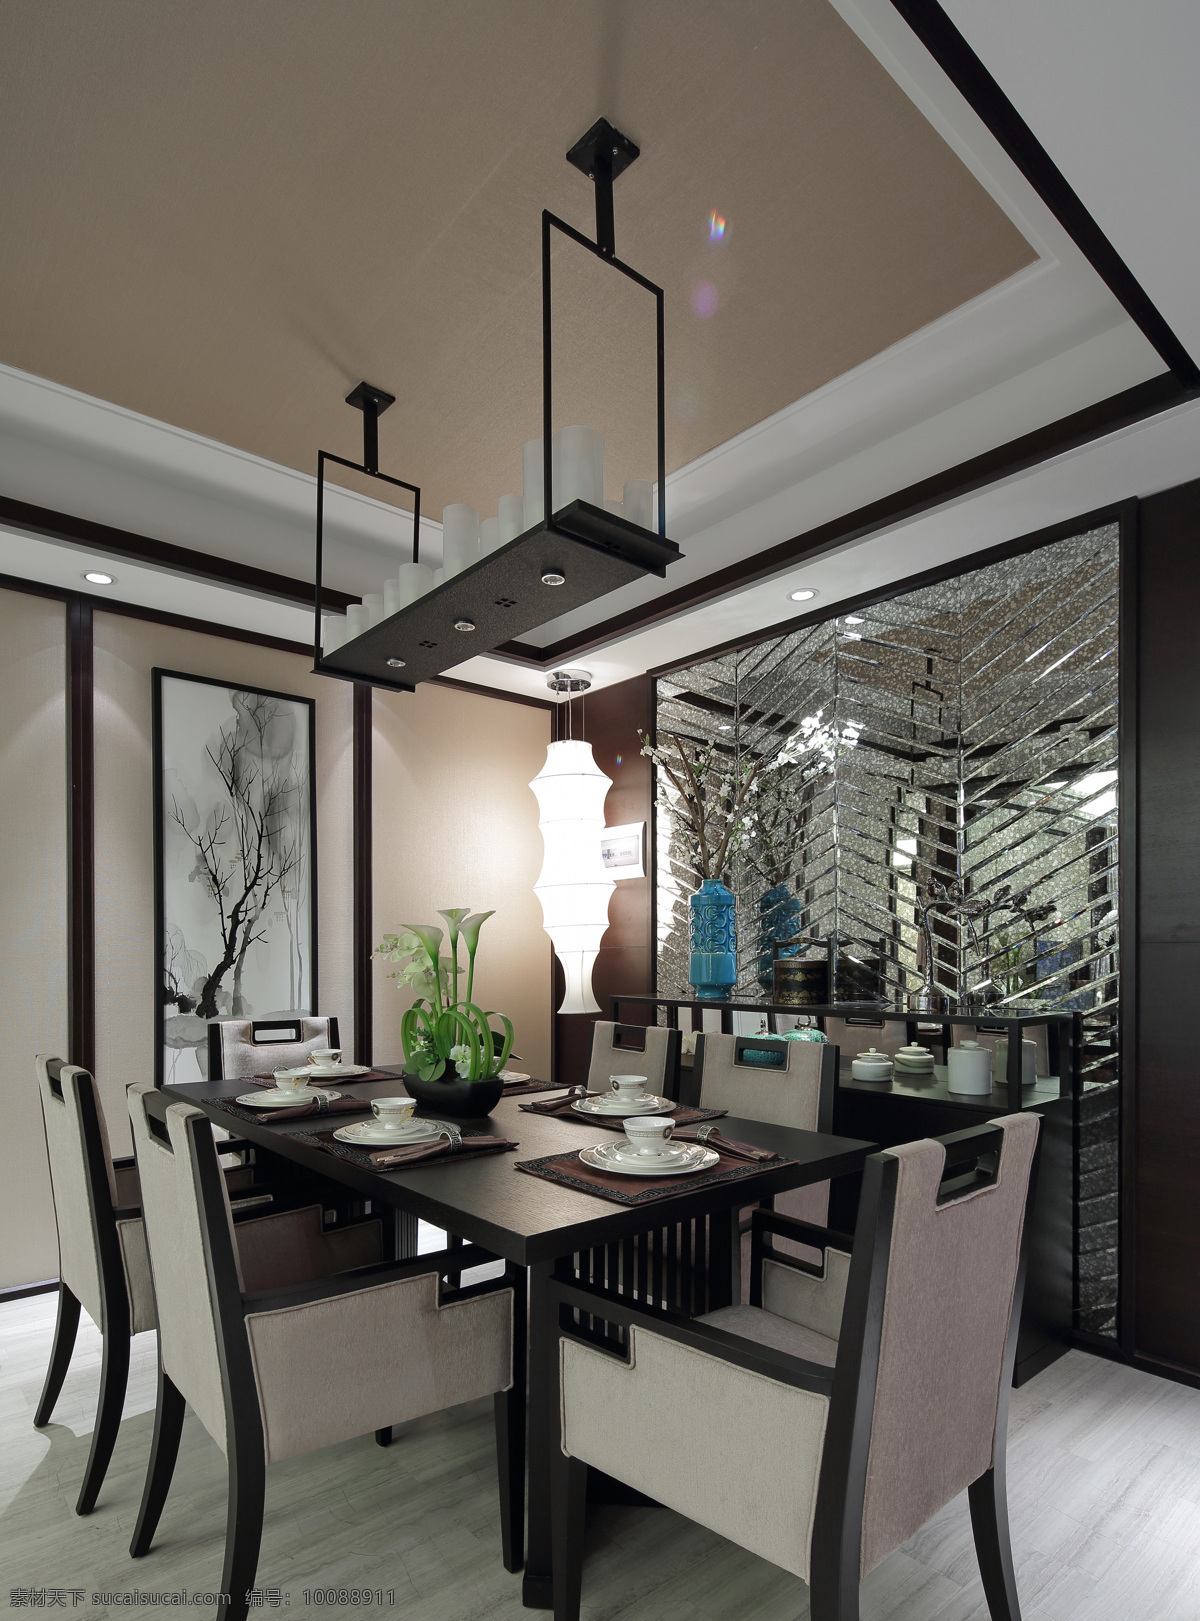 室内 餐厅 中式 祥云 装修 效果图 简约 黑色 老式 餐桌椅 瓷质餐具 创意吊灯 精美水墨画